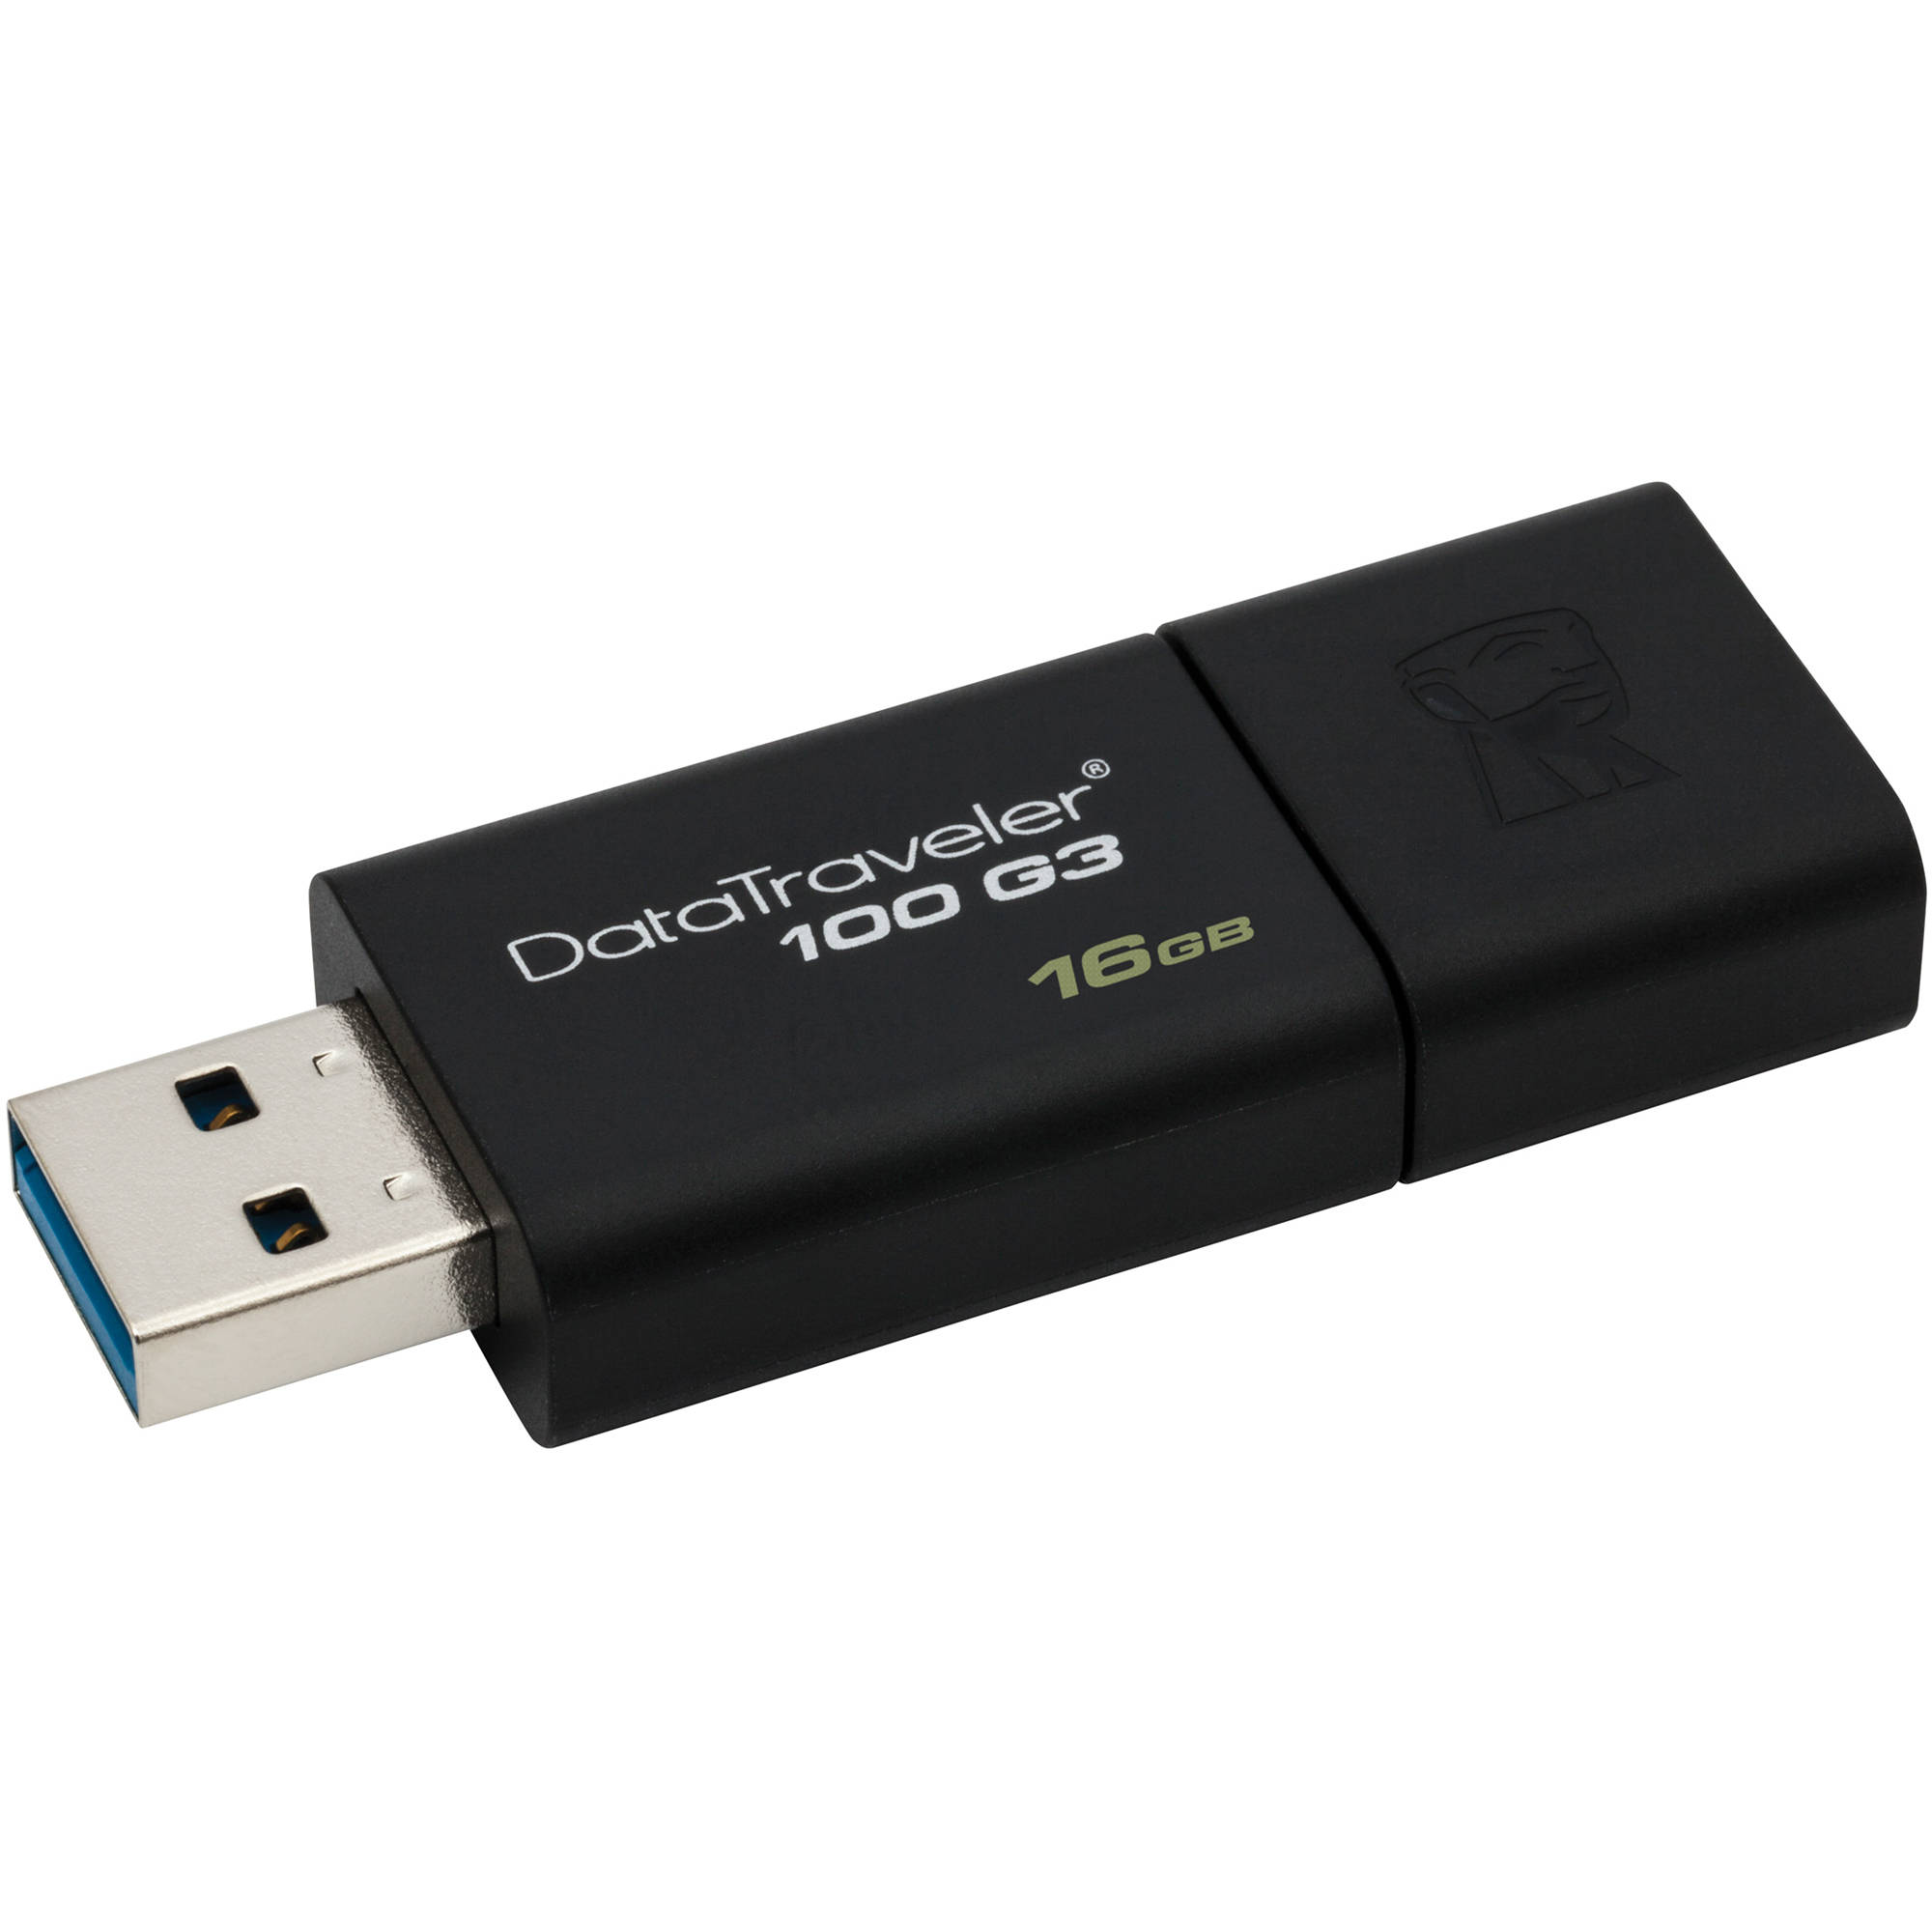 Kingston 16GB Data Traveler 100 G3 USB 3.1 Gen 1 DT100G3/16GB